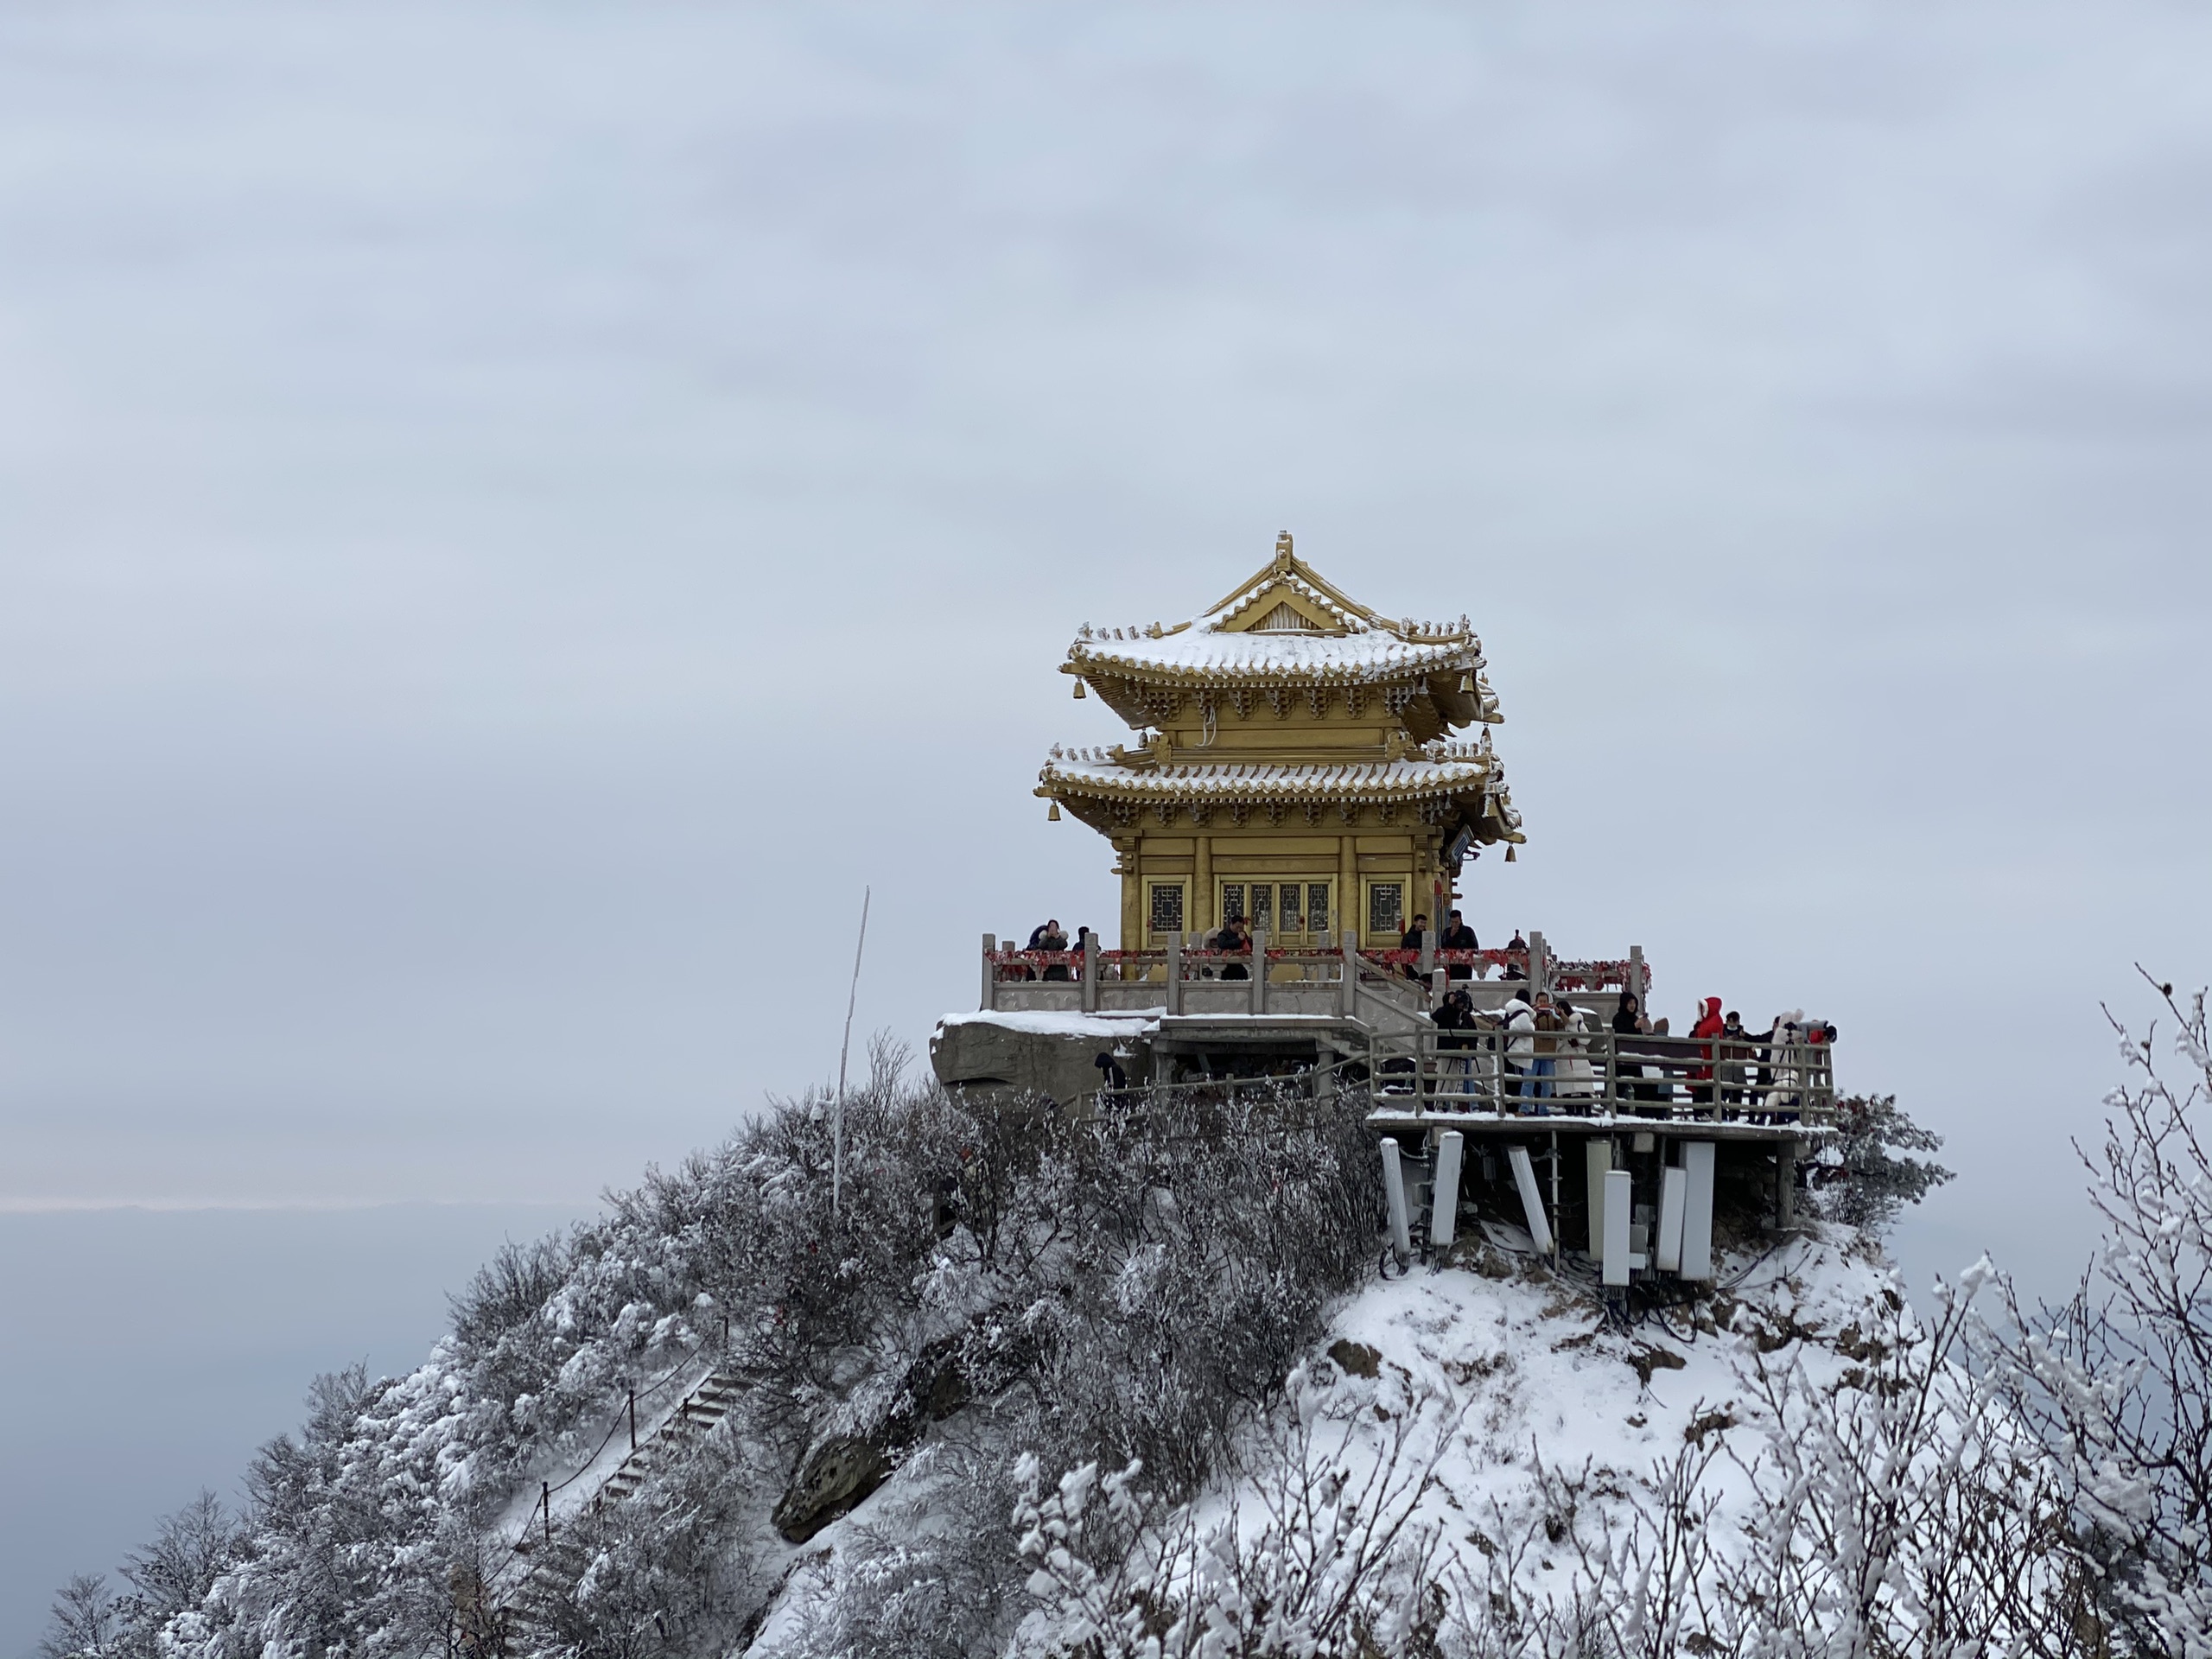 老君山雪景名不虚传确实很惊艳步行总行程大概7公里上升500米用时4小时